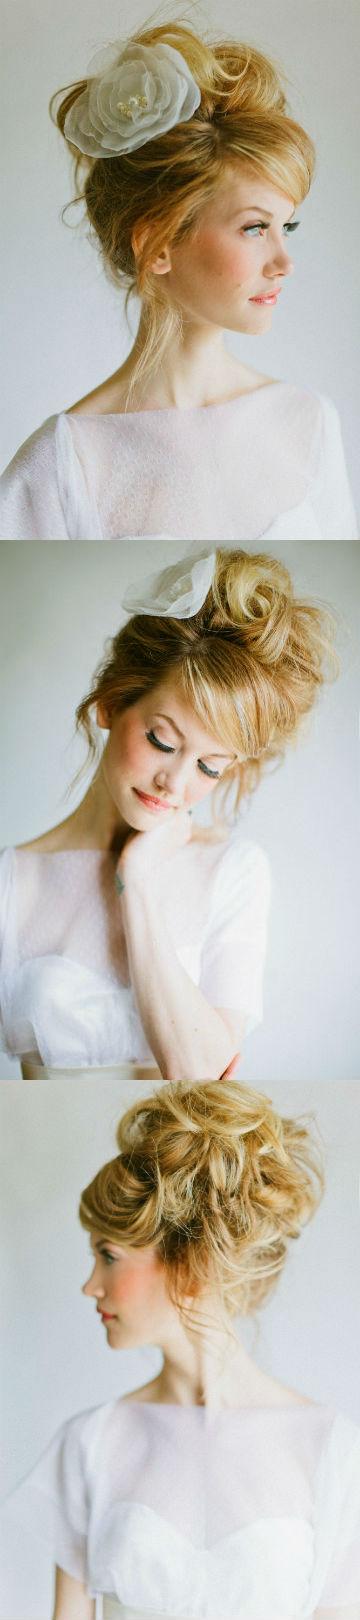 Hochzeit - Romantische Stil Braut Haar mit großen Rosengarten accesorizes